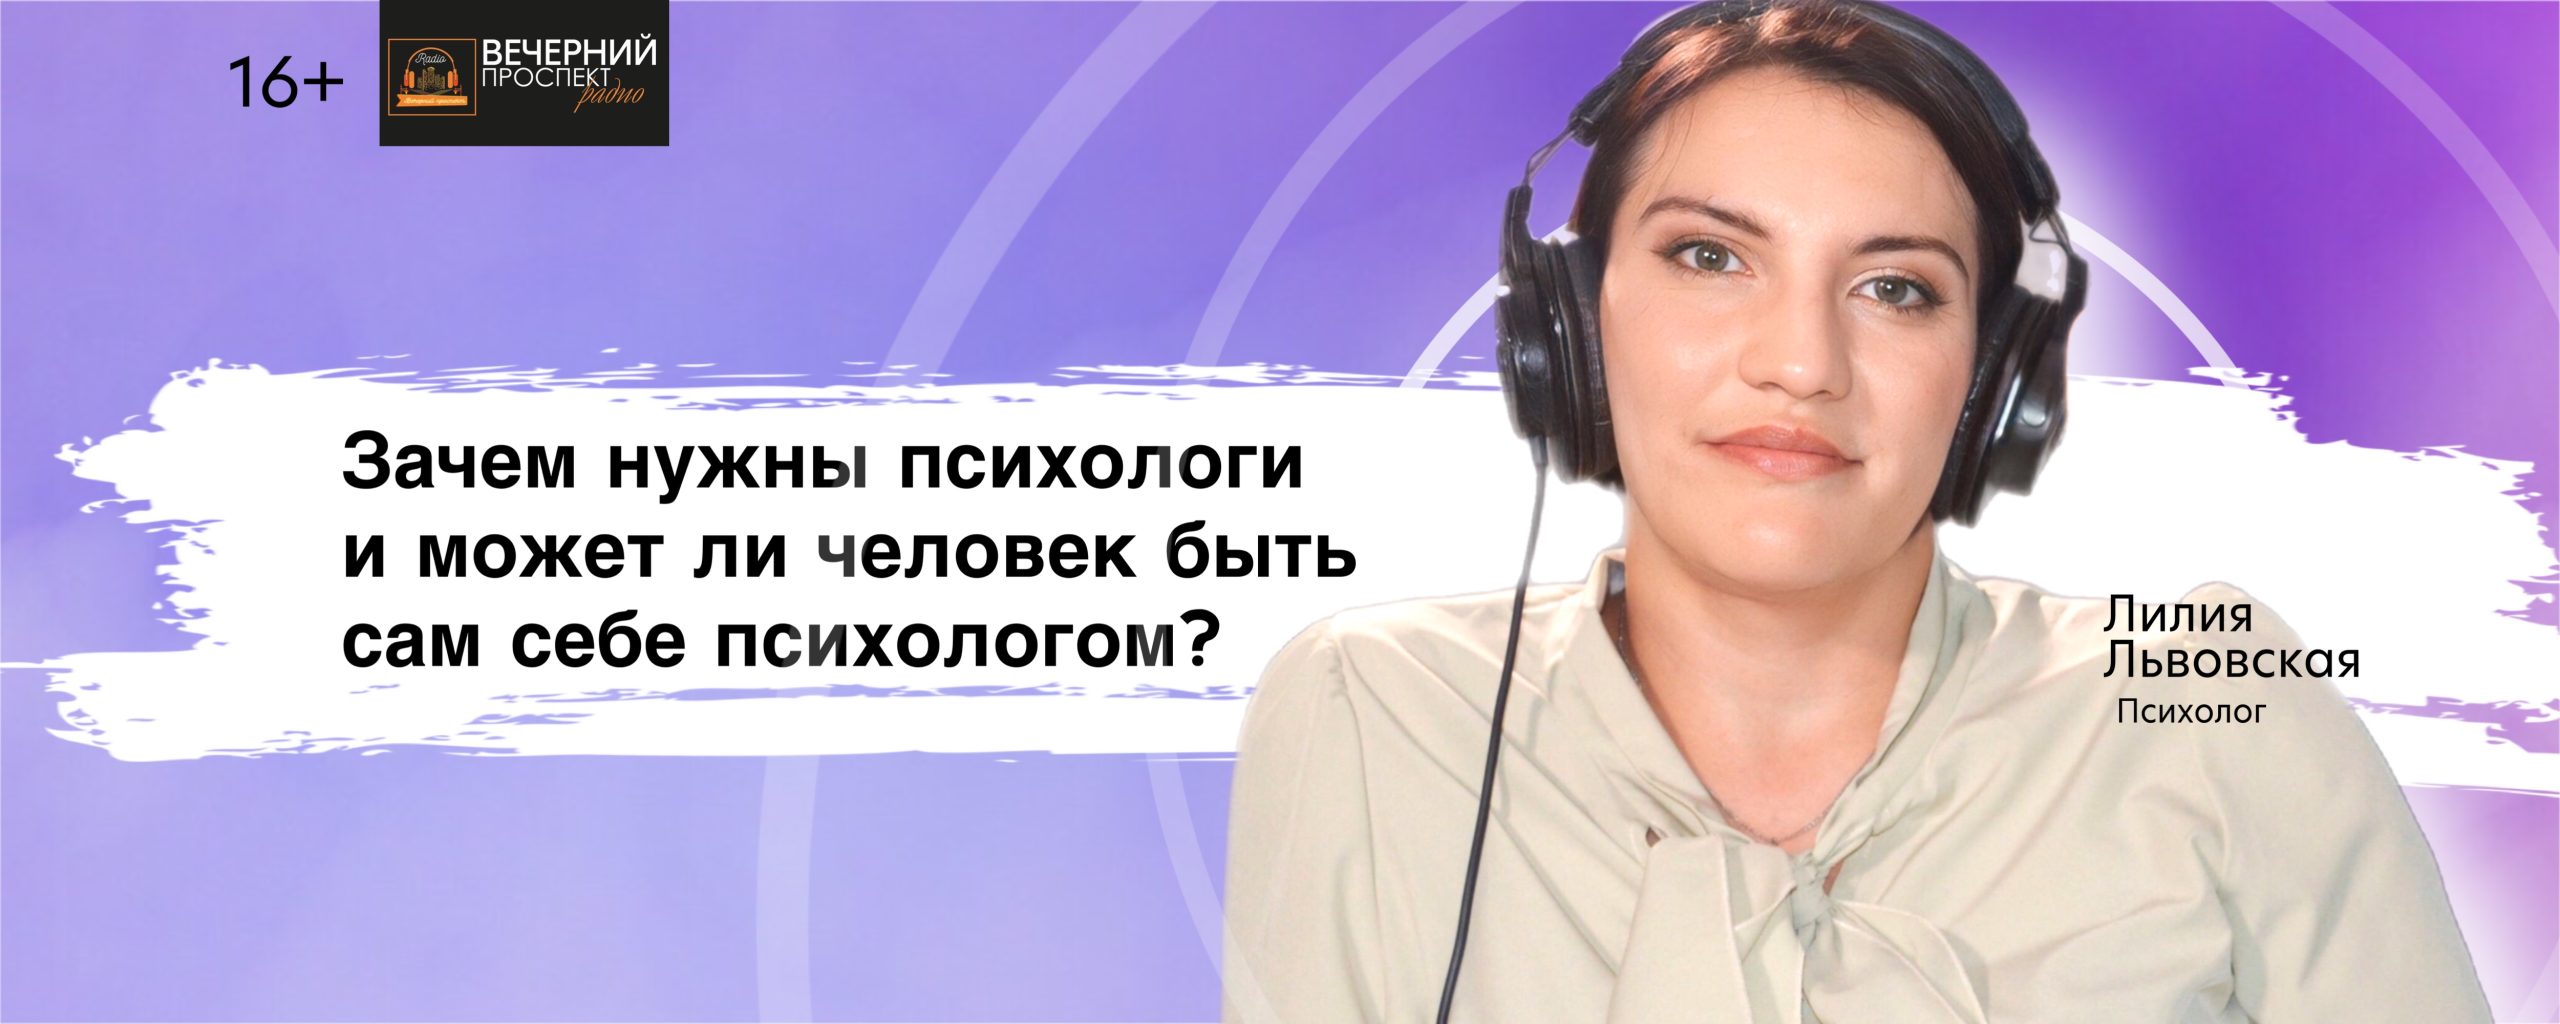 Психолог Лилия Львовская в эфире радиостанции «Вечерний Проспект».